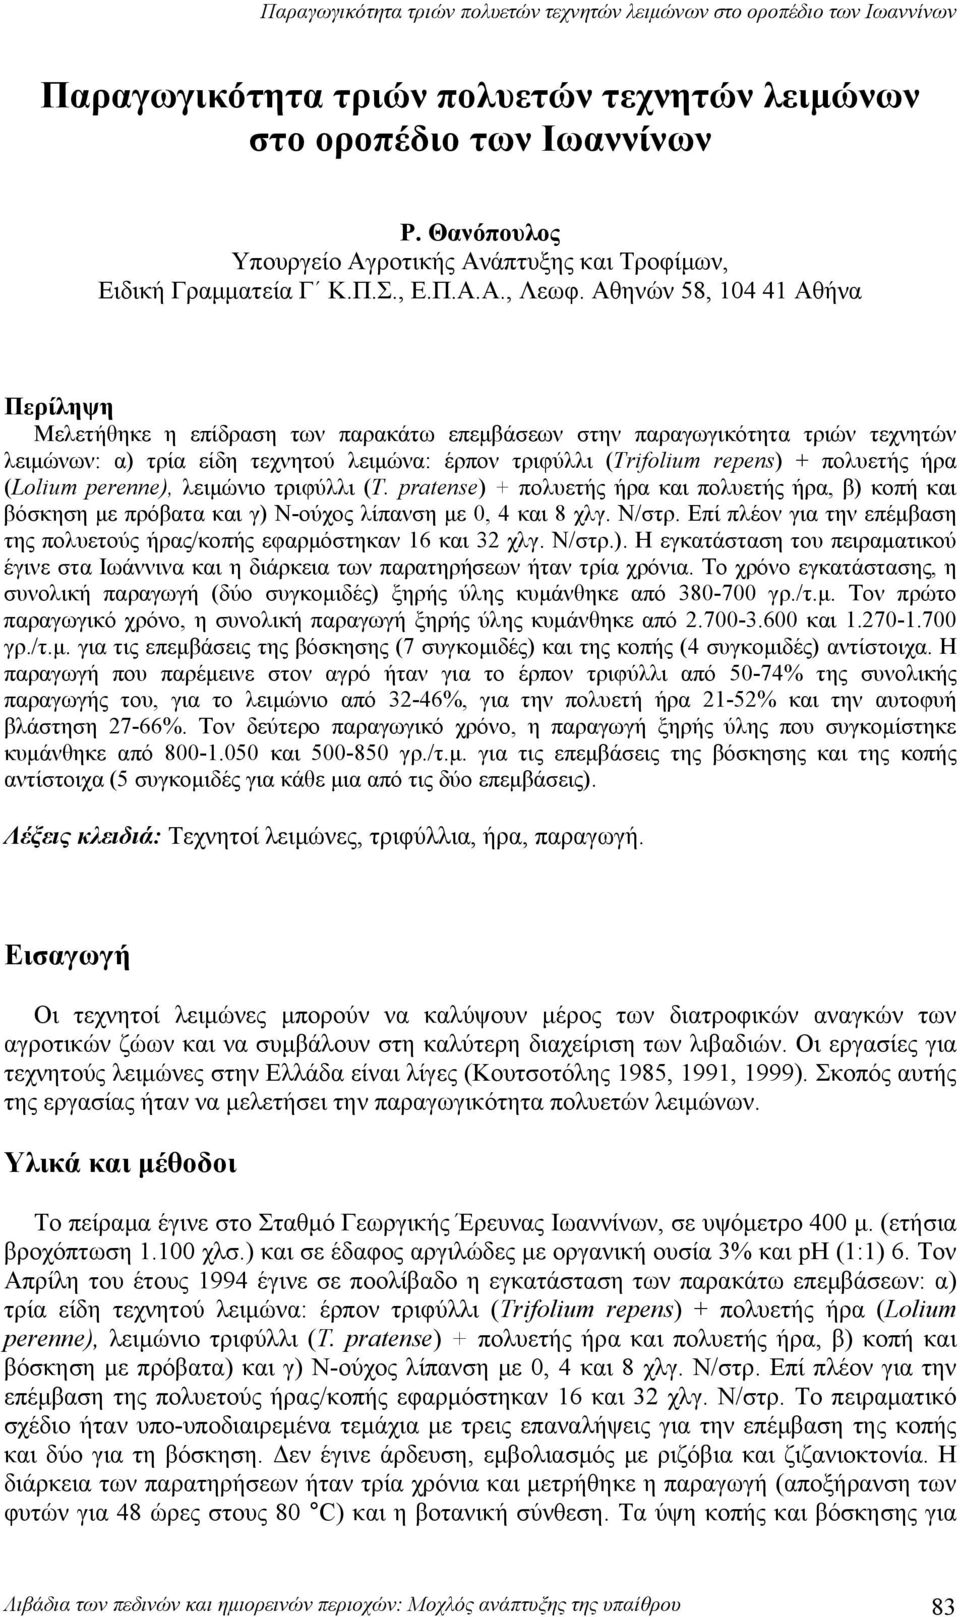 Αθηνών 58, 14 41 Αθήν Περίληψη Μελετήθηκε η επίδρση των πρκάτω επεμάσεων στην πργωγικότητ τριών τεχνητών λειμώνων: ) τρί είδη τεχνητού λειμών: έρπον τριφύλλι (Trifolium repens) + πολυετής ήρ (Lolium